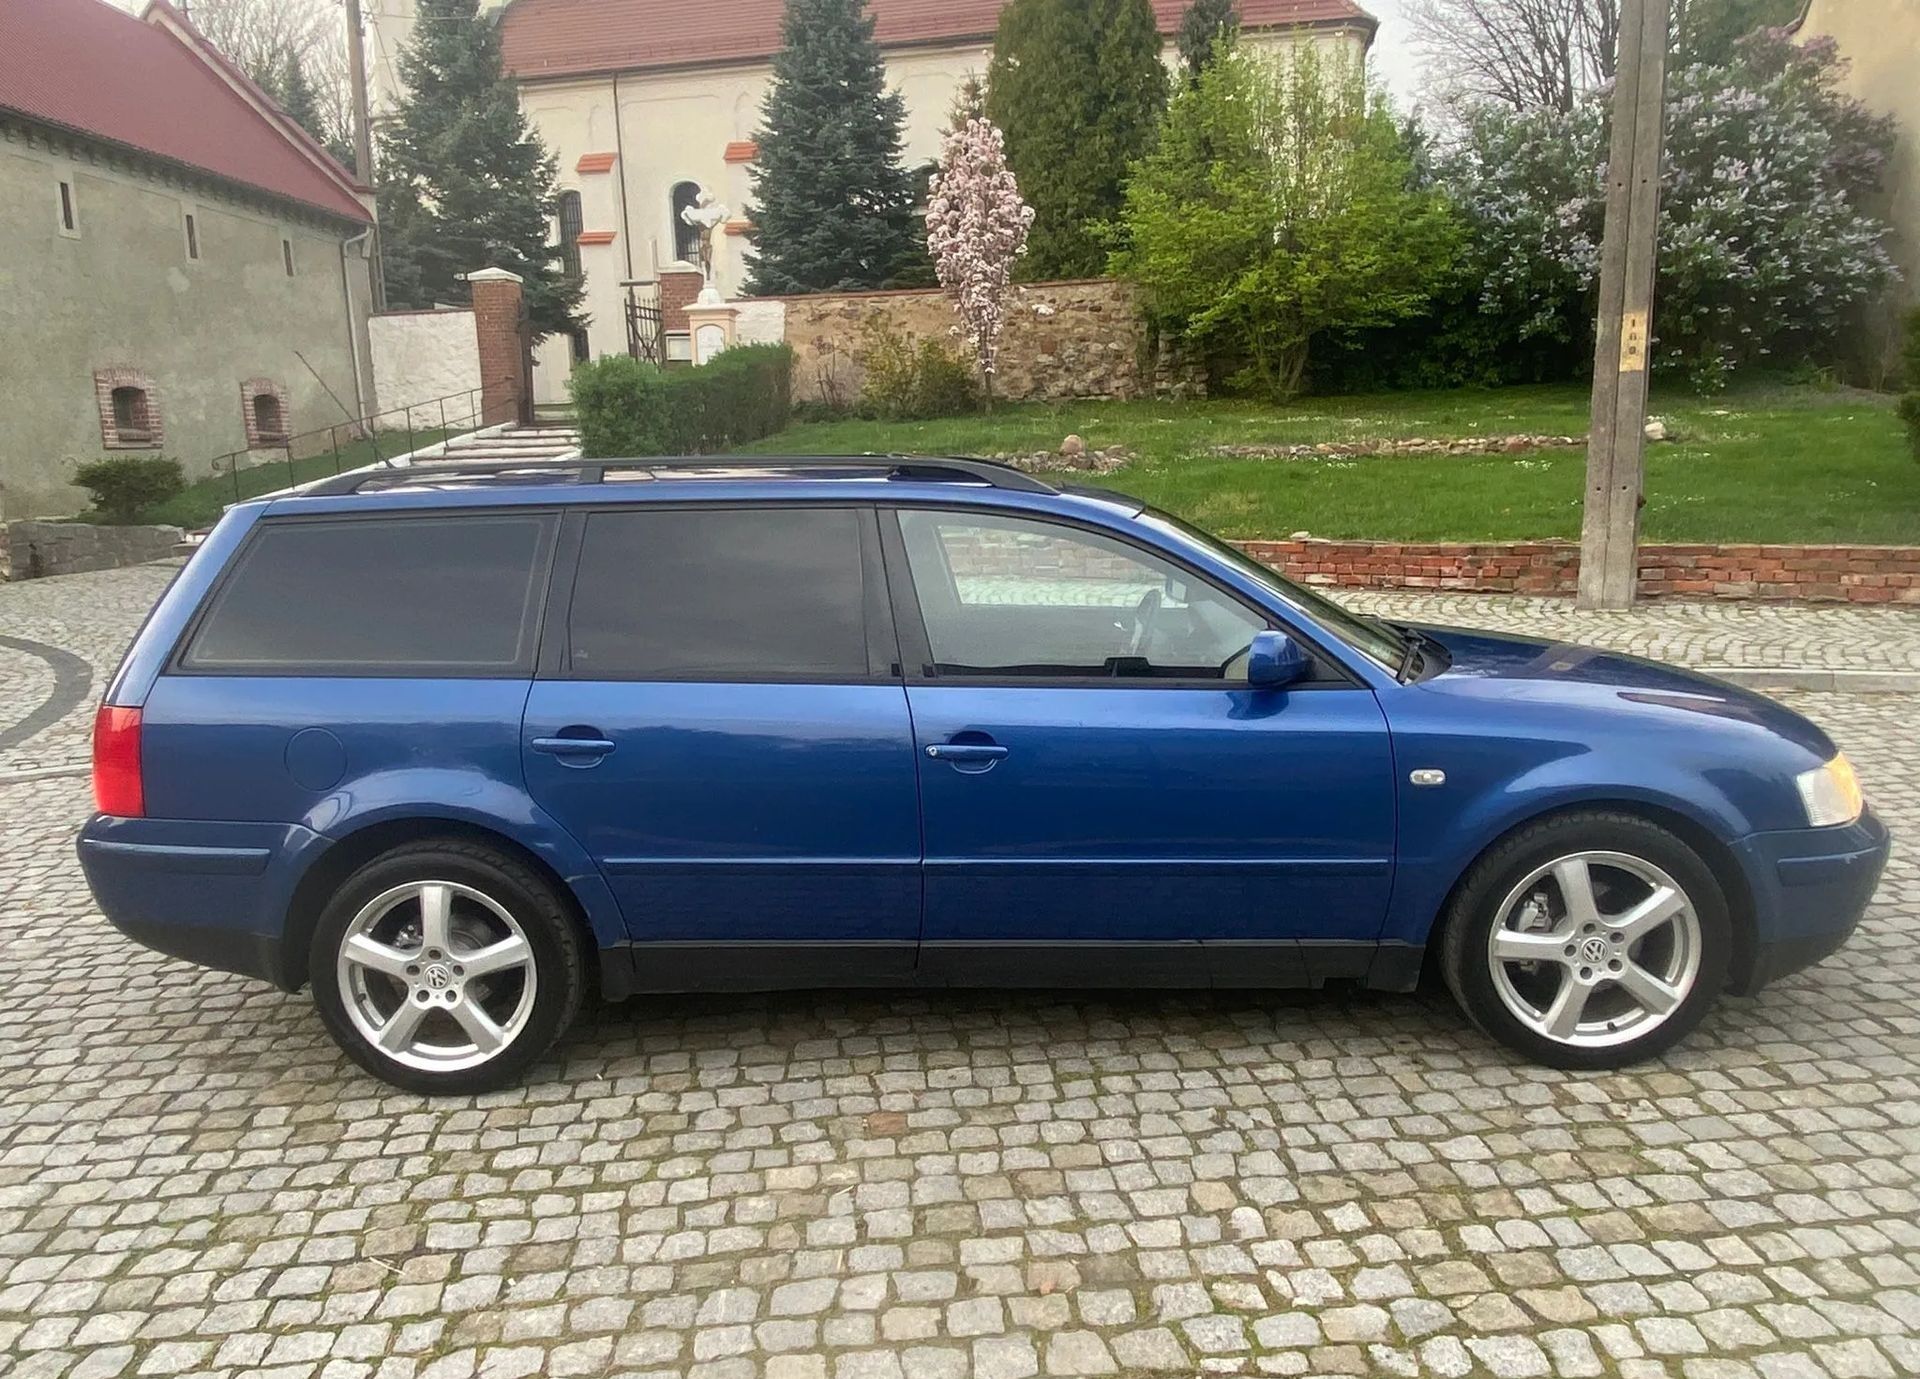 Volkswagen Passat B5